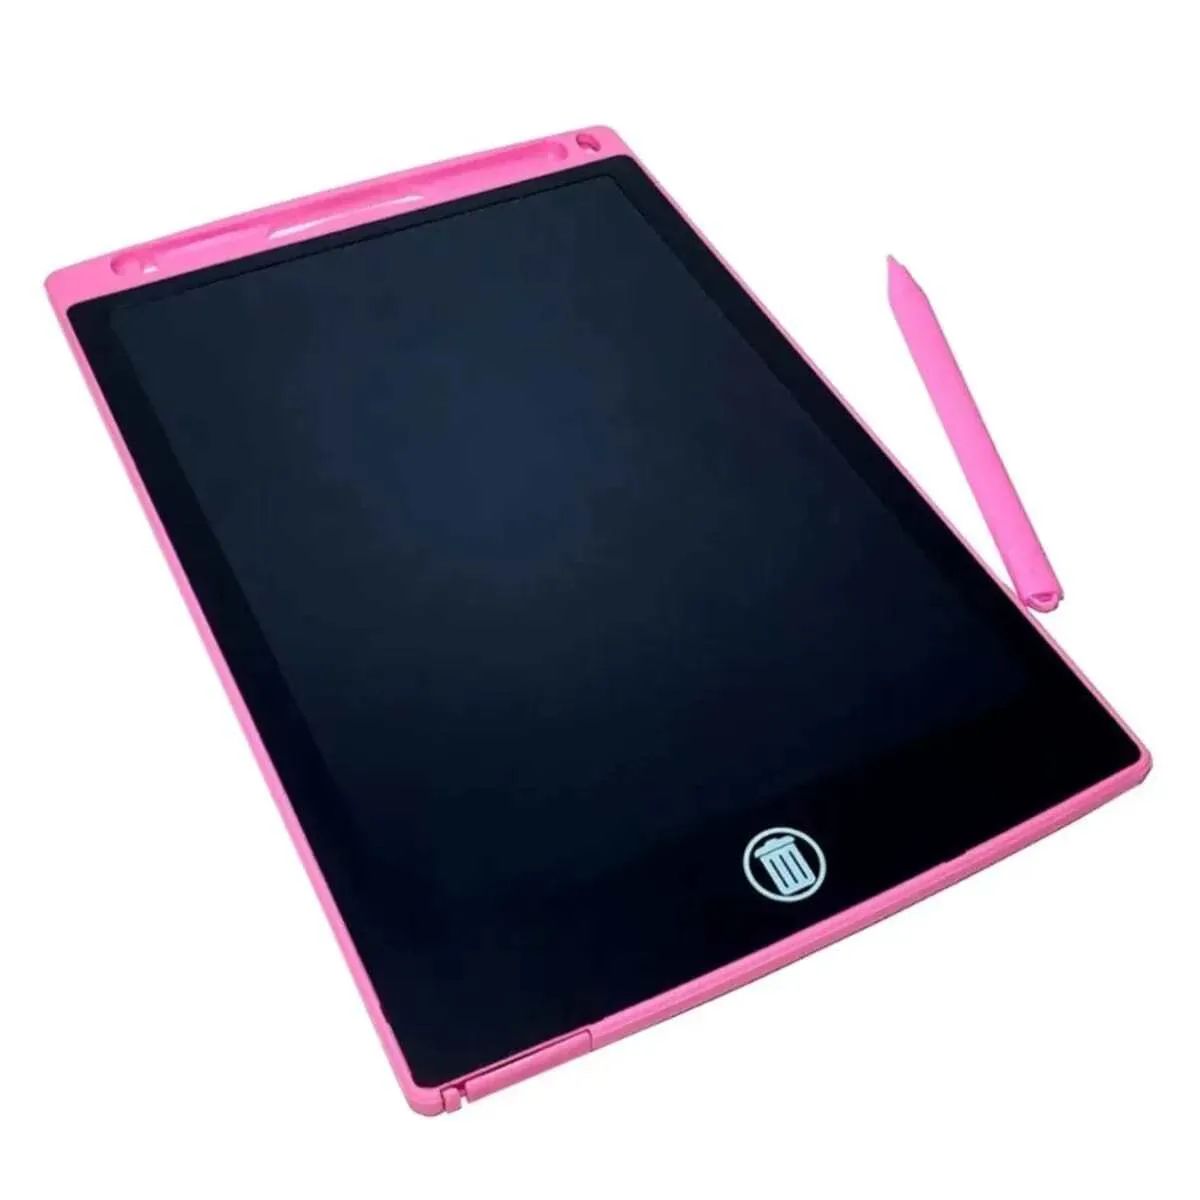 Графический планшет 8.5 LCD Writing Tablet Pink 00658 графический планшет 8 5 lcd writing tablet green 00656